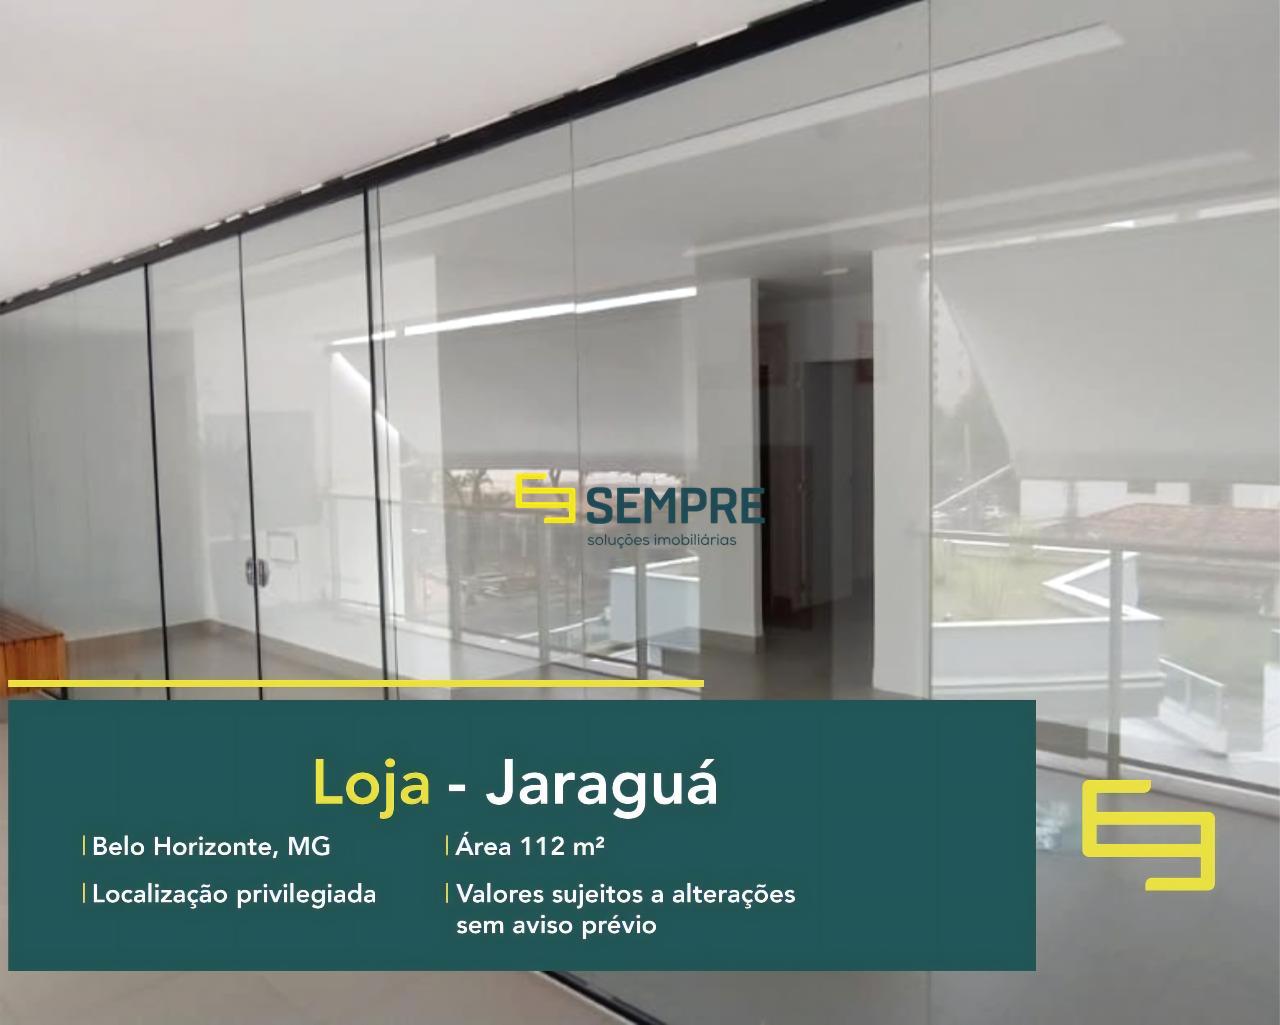 Aluguel de loja no Jaraguá em Belo Horizonte, excelente localização. O estabelecimento comercial conta com área de 112,60 m².